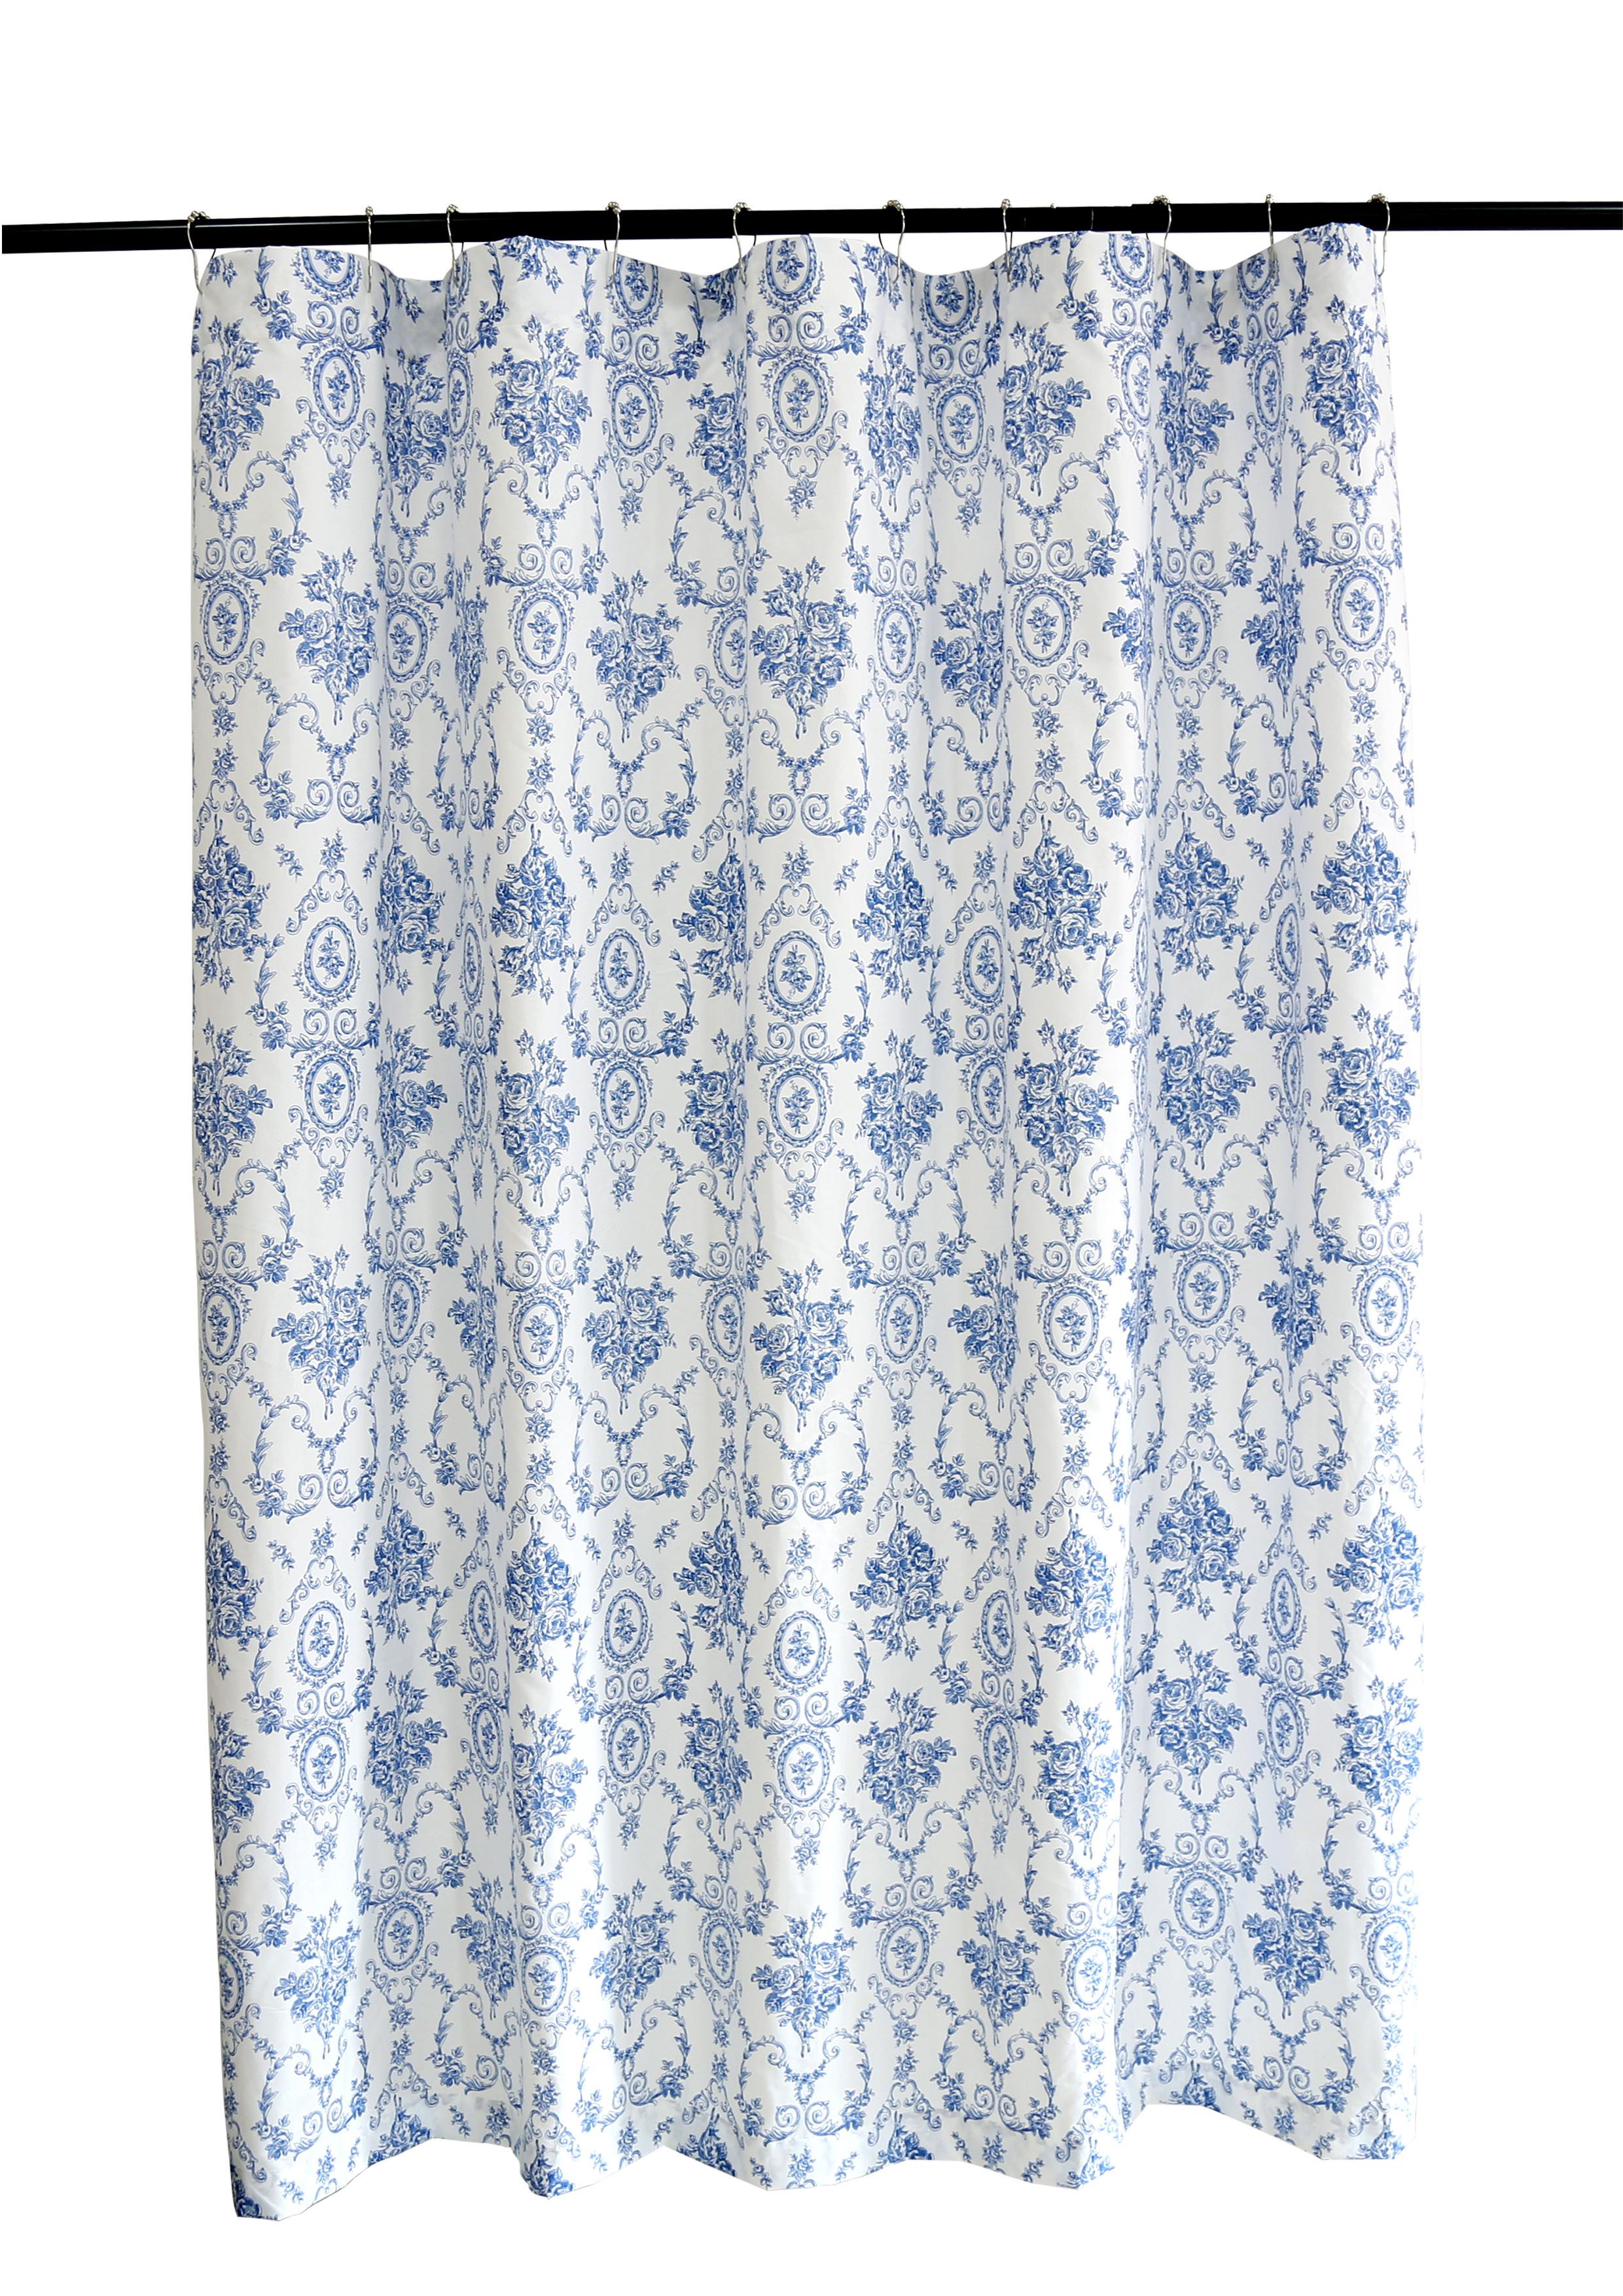 Blue Wisteria Lattice Shower Curtain 72, Blue Lattice Shower Curtain